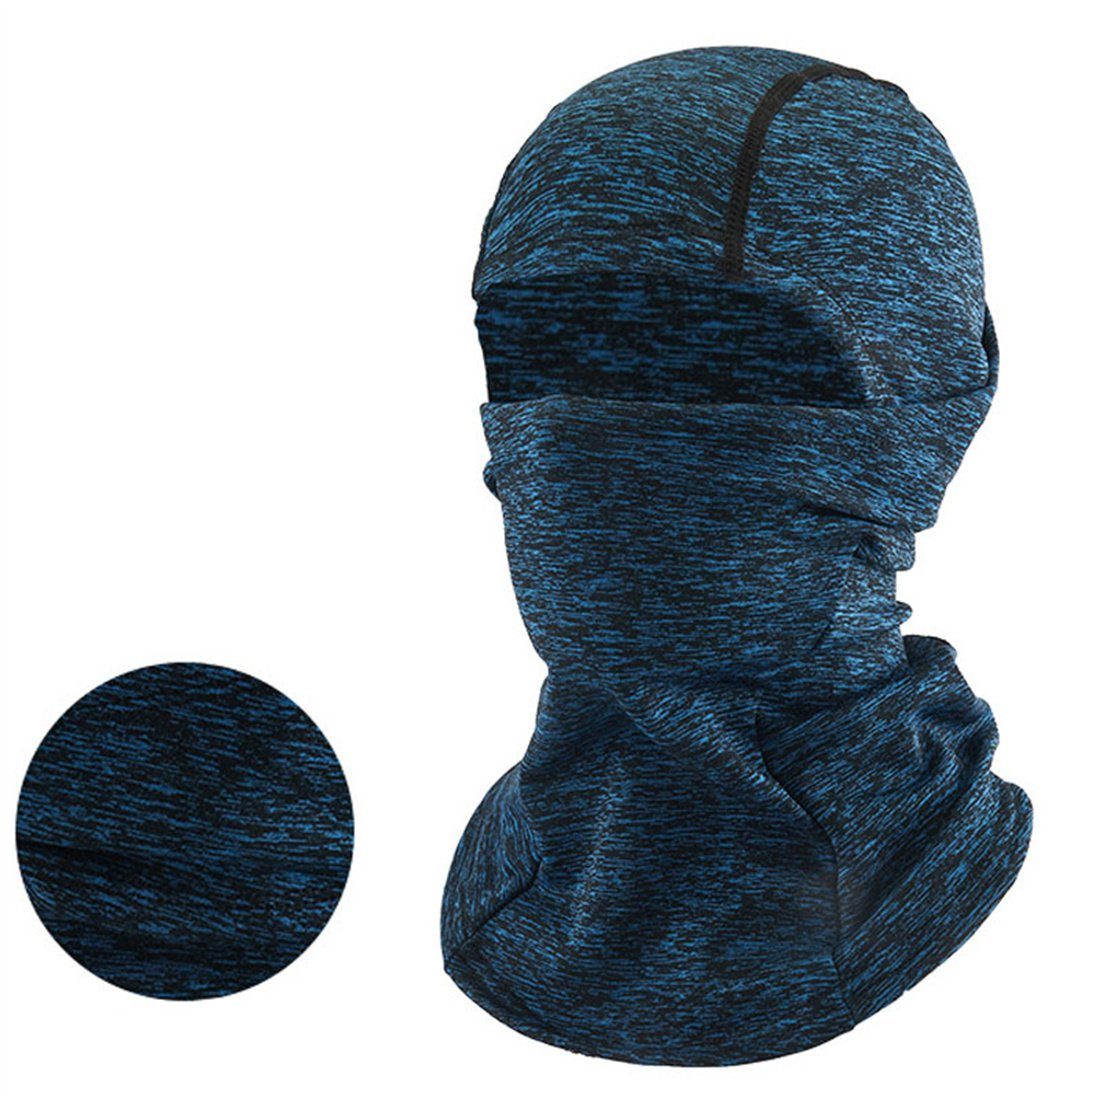 Winter Radfahren DÖRÖY Kopfbedeckung, Ski unisex warme Maske, kalte Sturmhaube blau